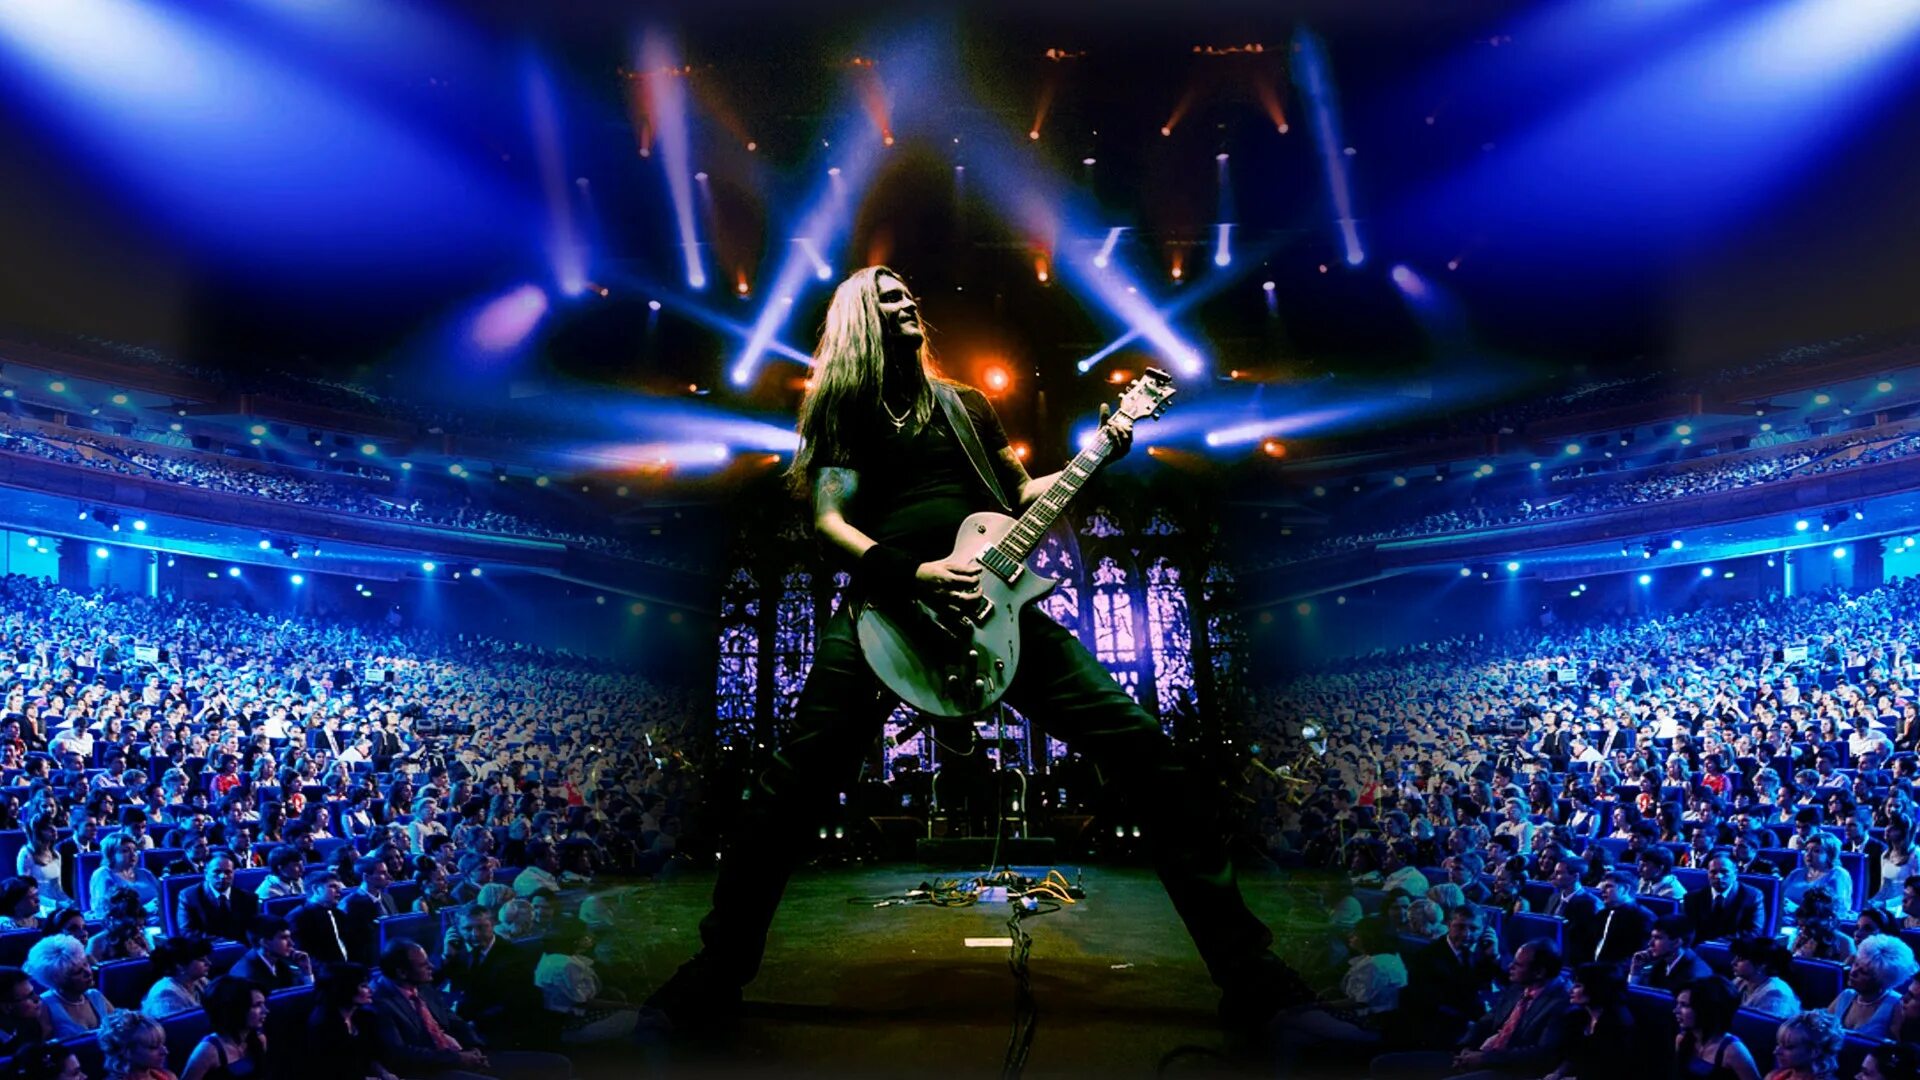 Шоу концерты купить билет в москве. Концерт металлика трибьют. Metallica show s&m Tribute с симфоническим оркестром. Металлика 2022 концерт. Концерт симфонического оркестра «Metallica show s&m Tribute».